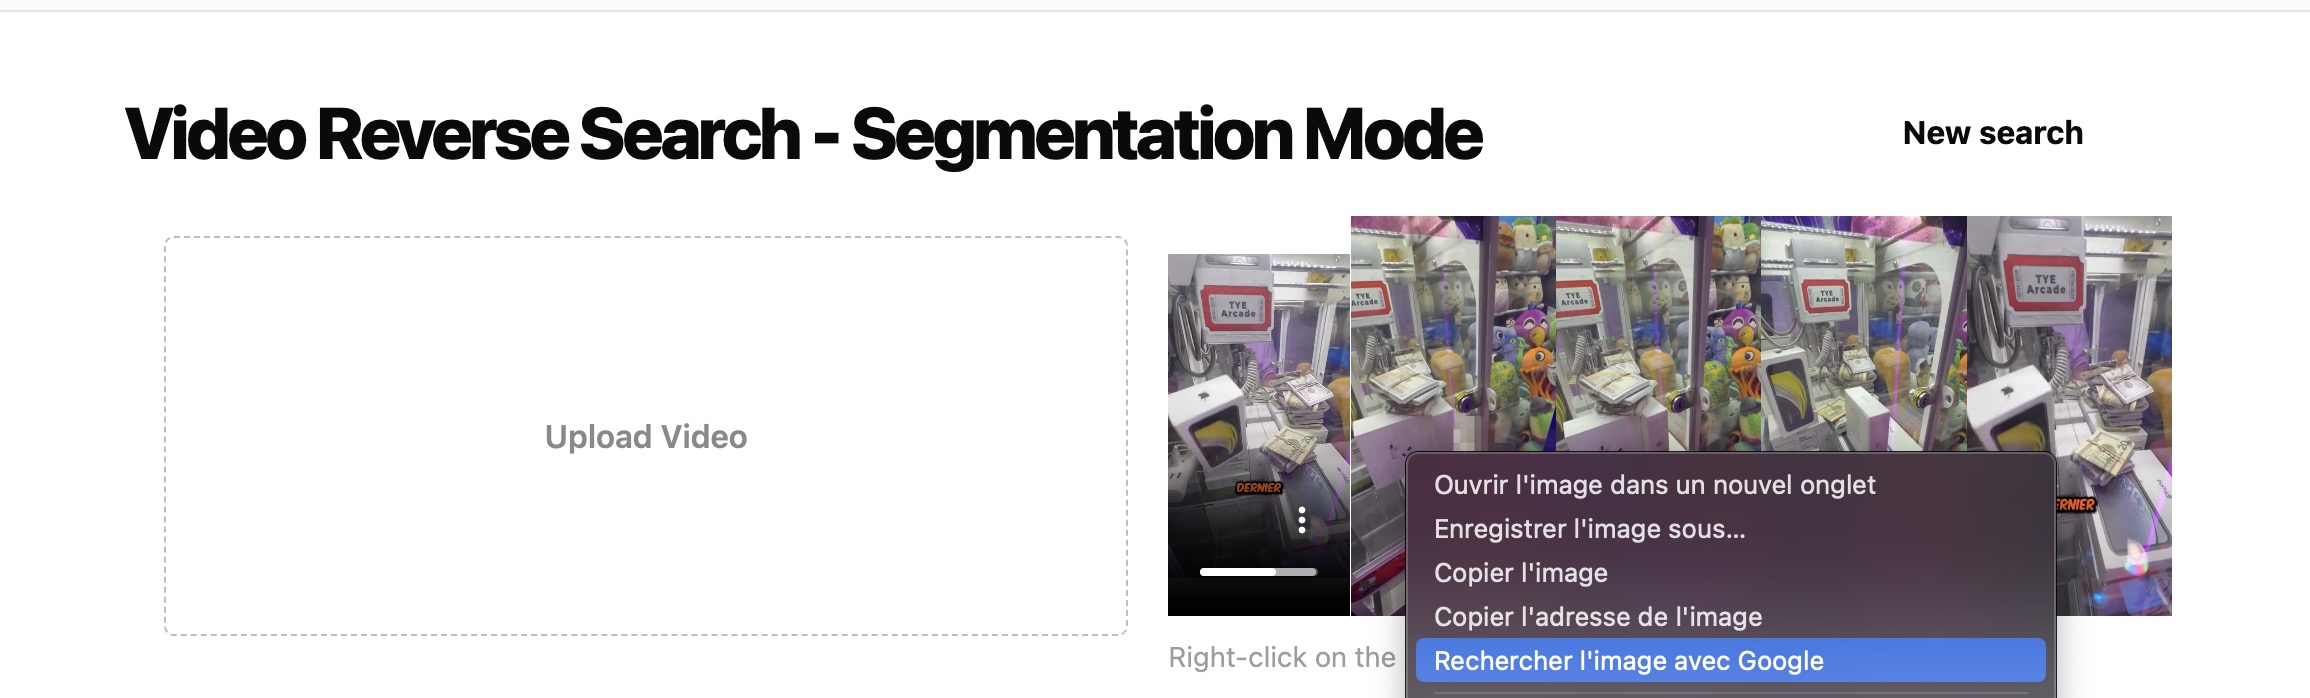 reverse search segmentation mode step 1